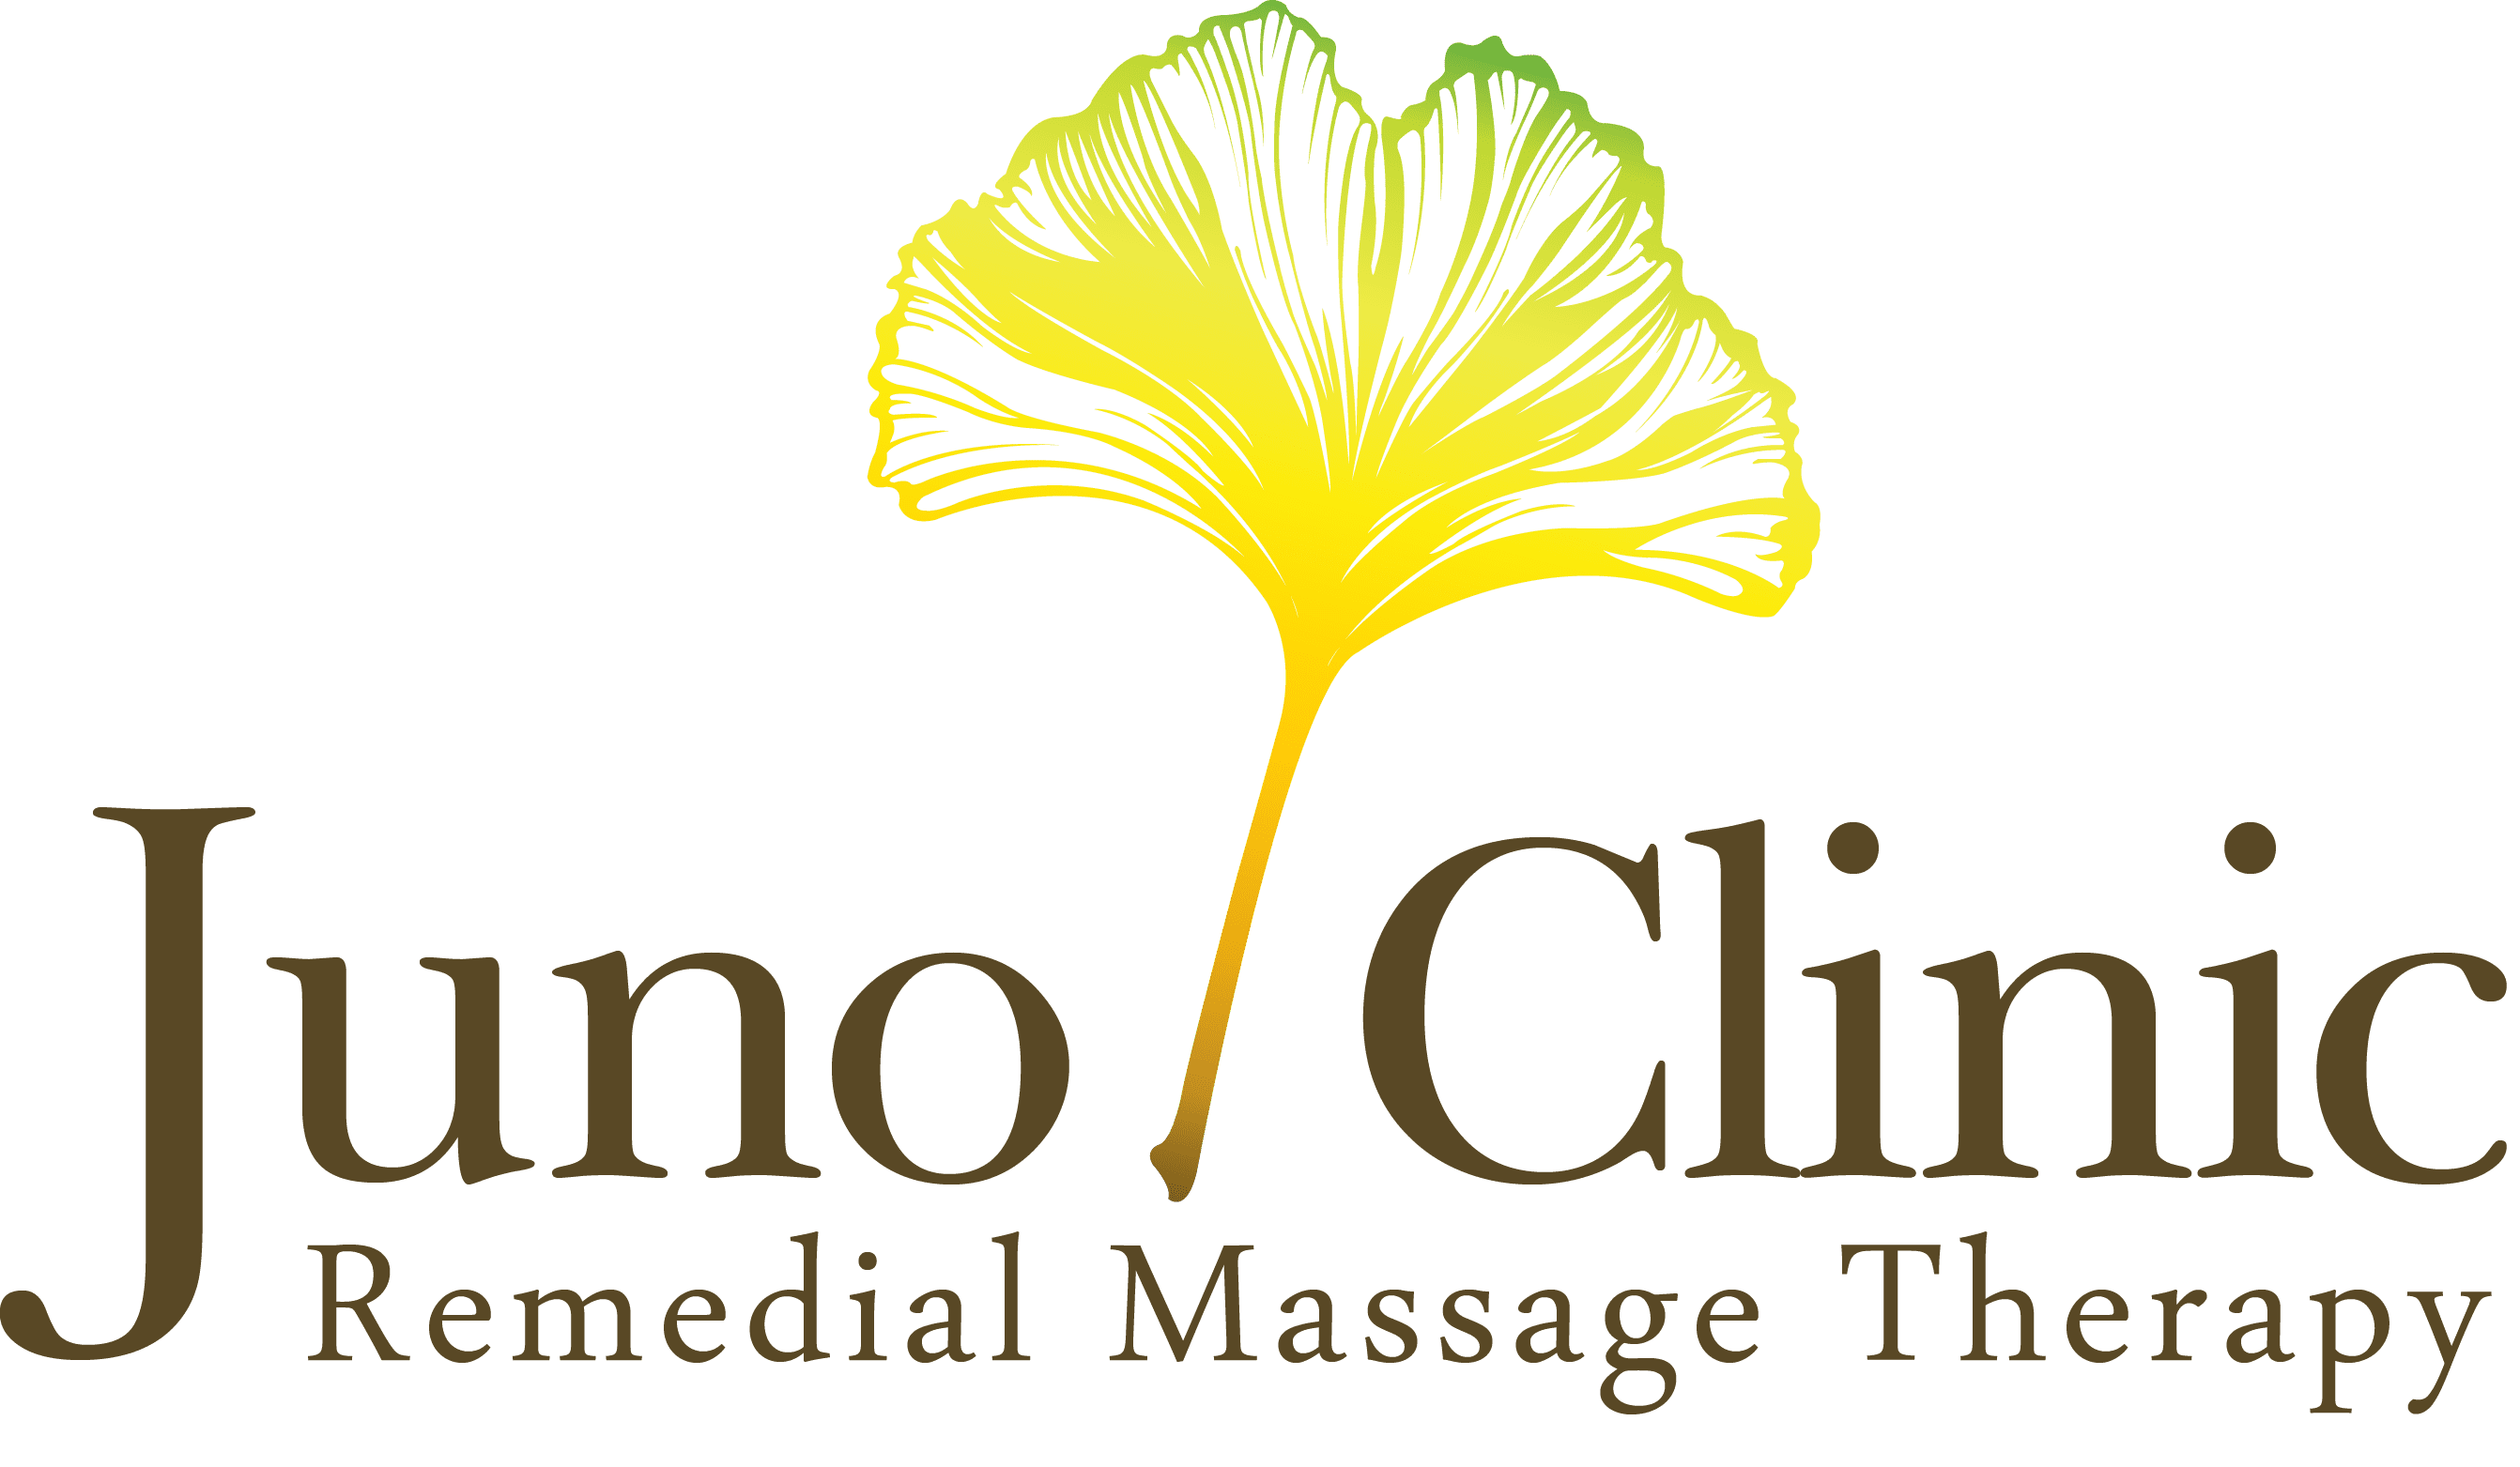 Massage Therapist/Remedial Massage Therapist